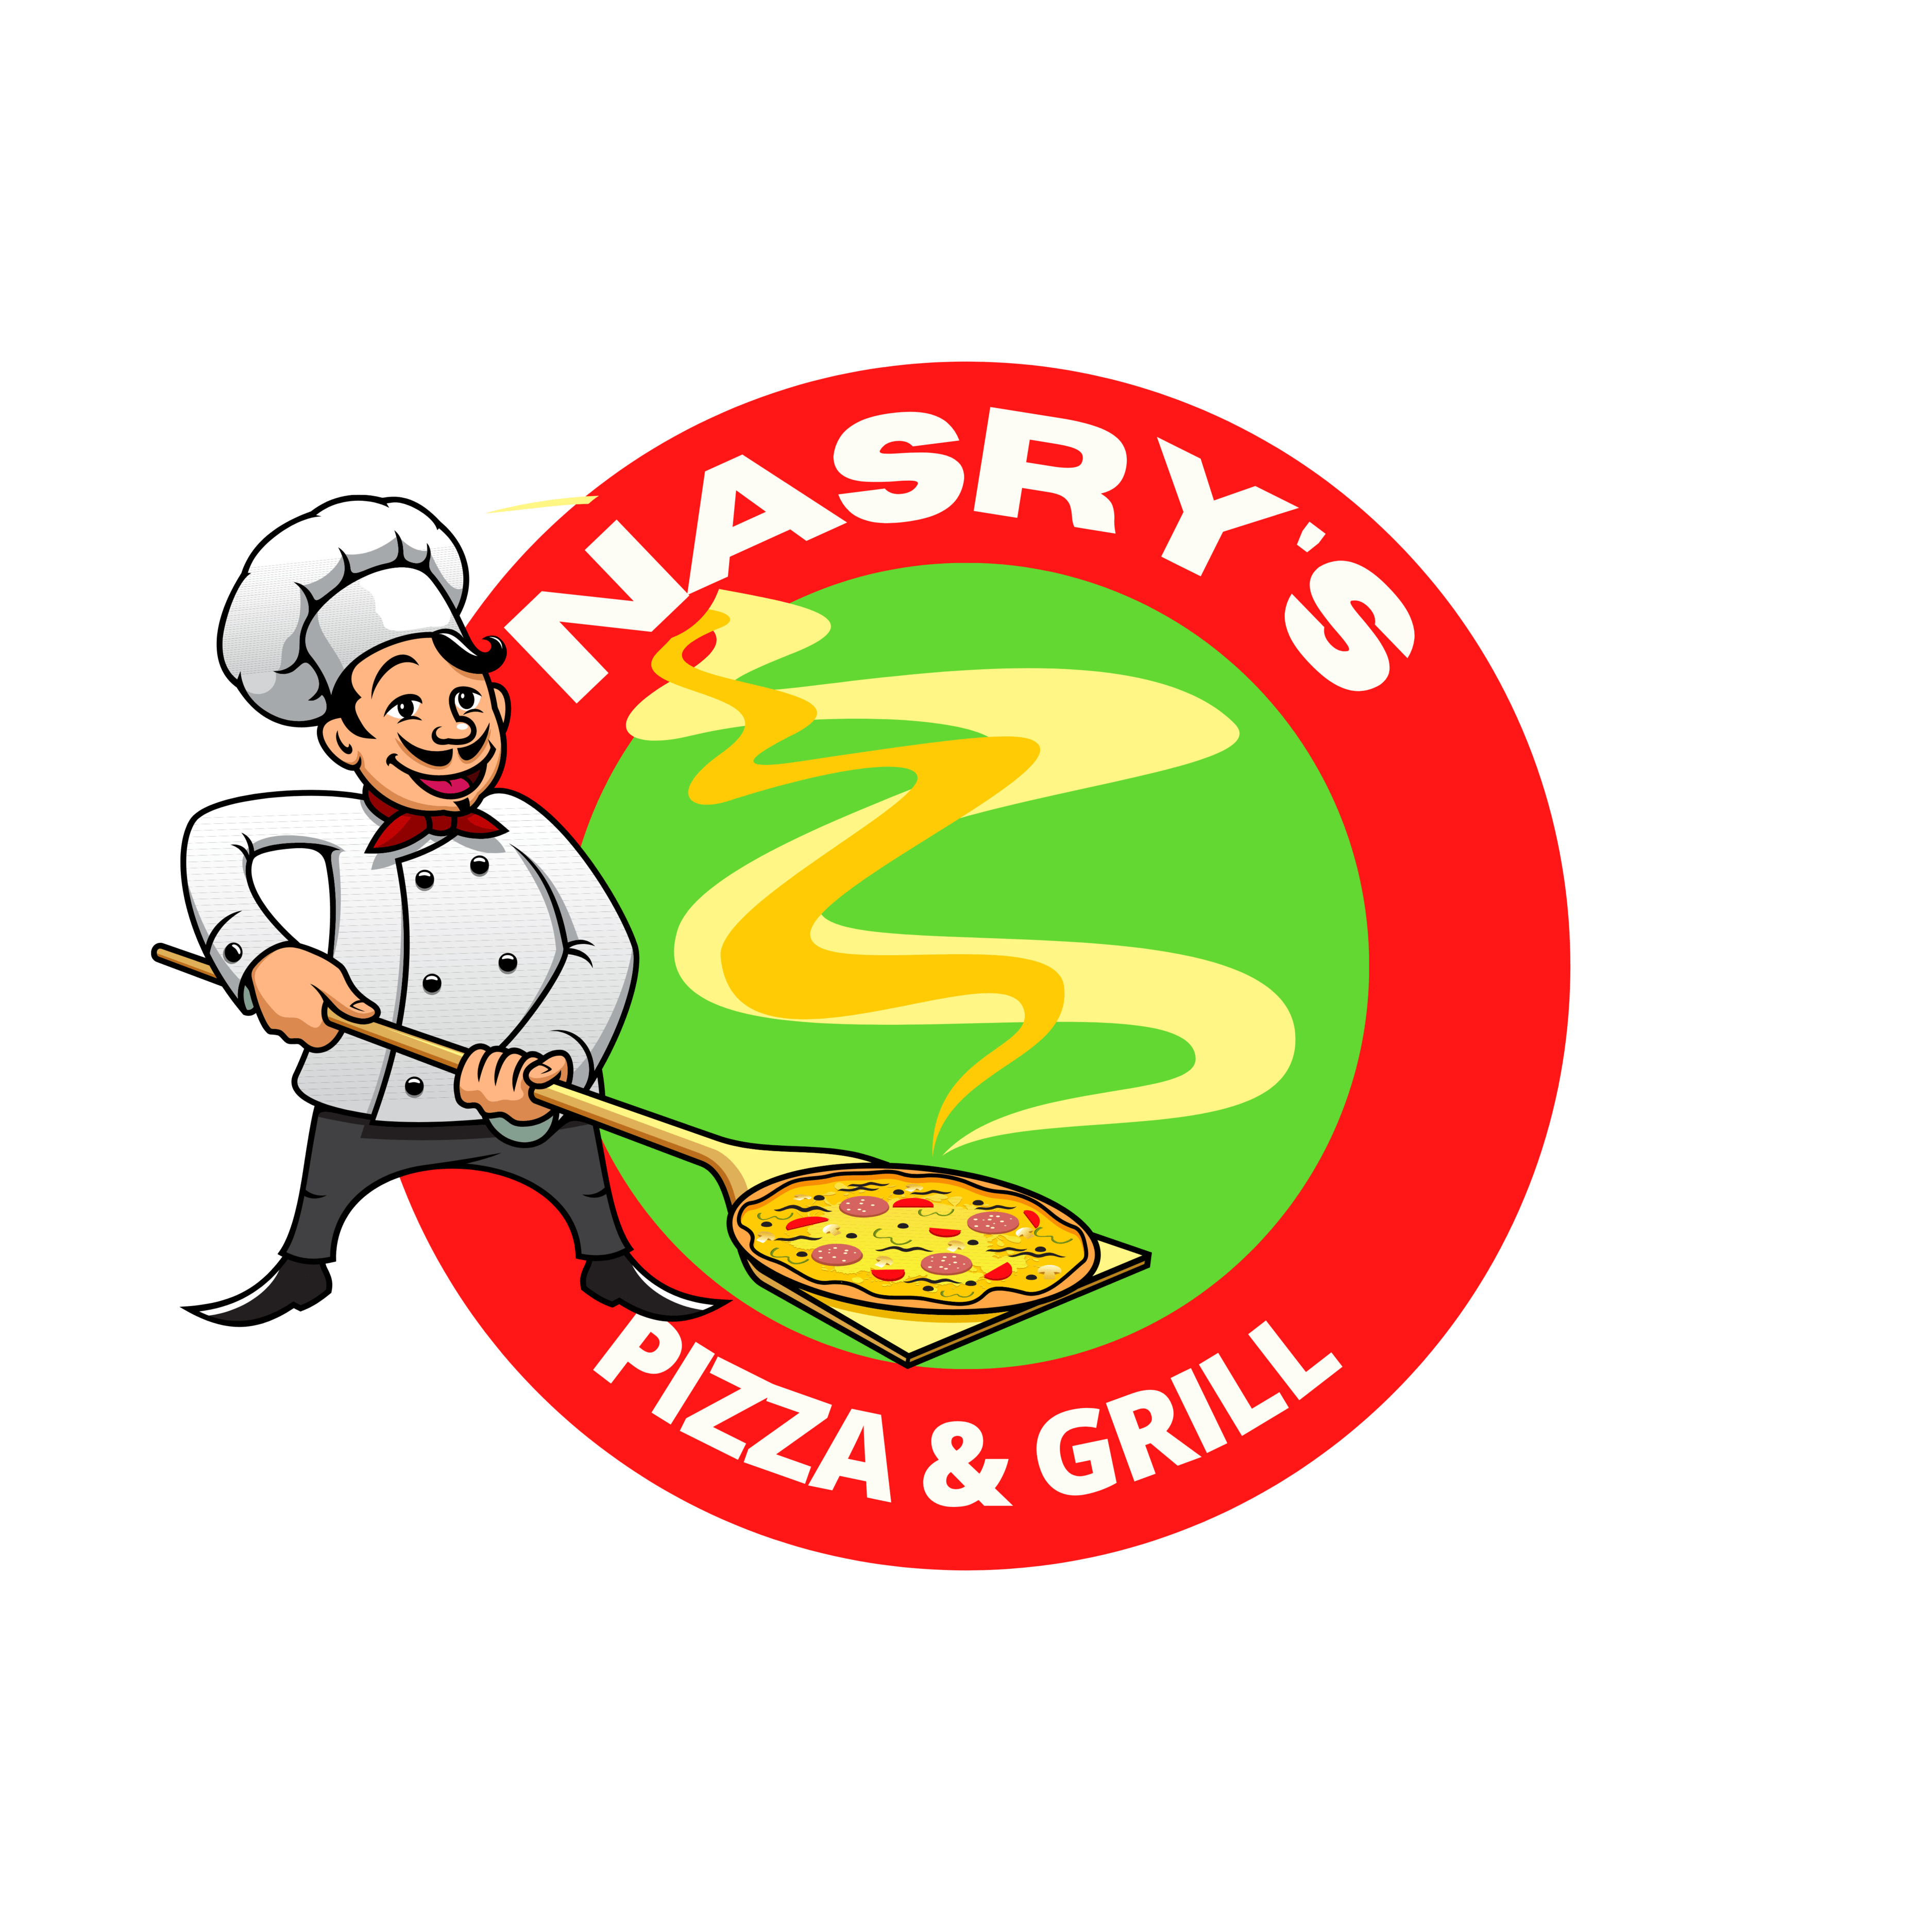 Nasrys Pizza